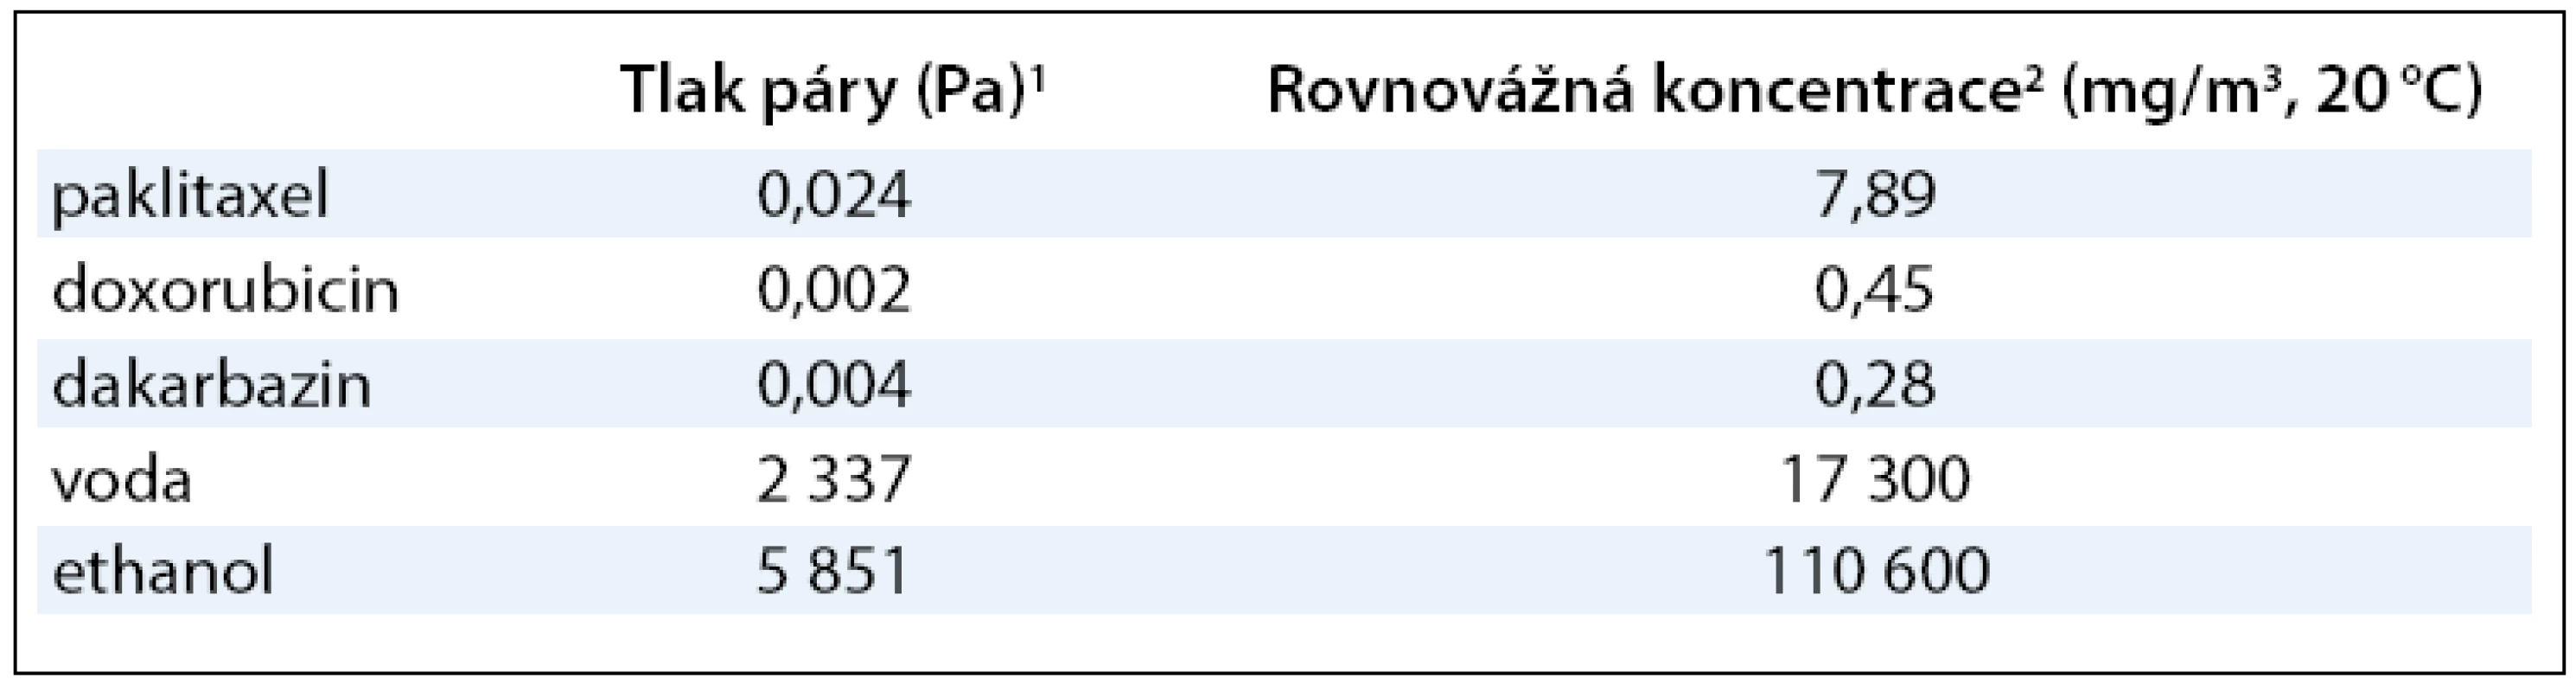 Evaporační charakteristiky vybraných cytostatik (paklitaxelu, doxorubicinu a dakarbazinu) v porovnání s parametry pro vodu a ethanol.